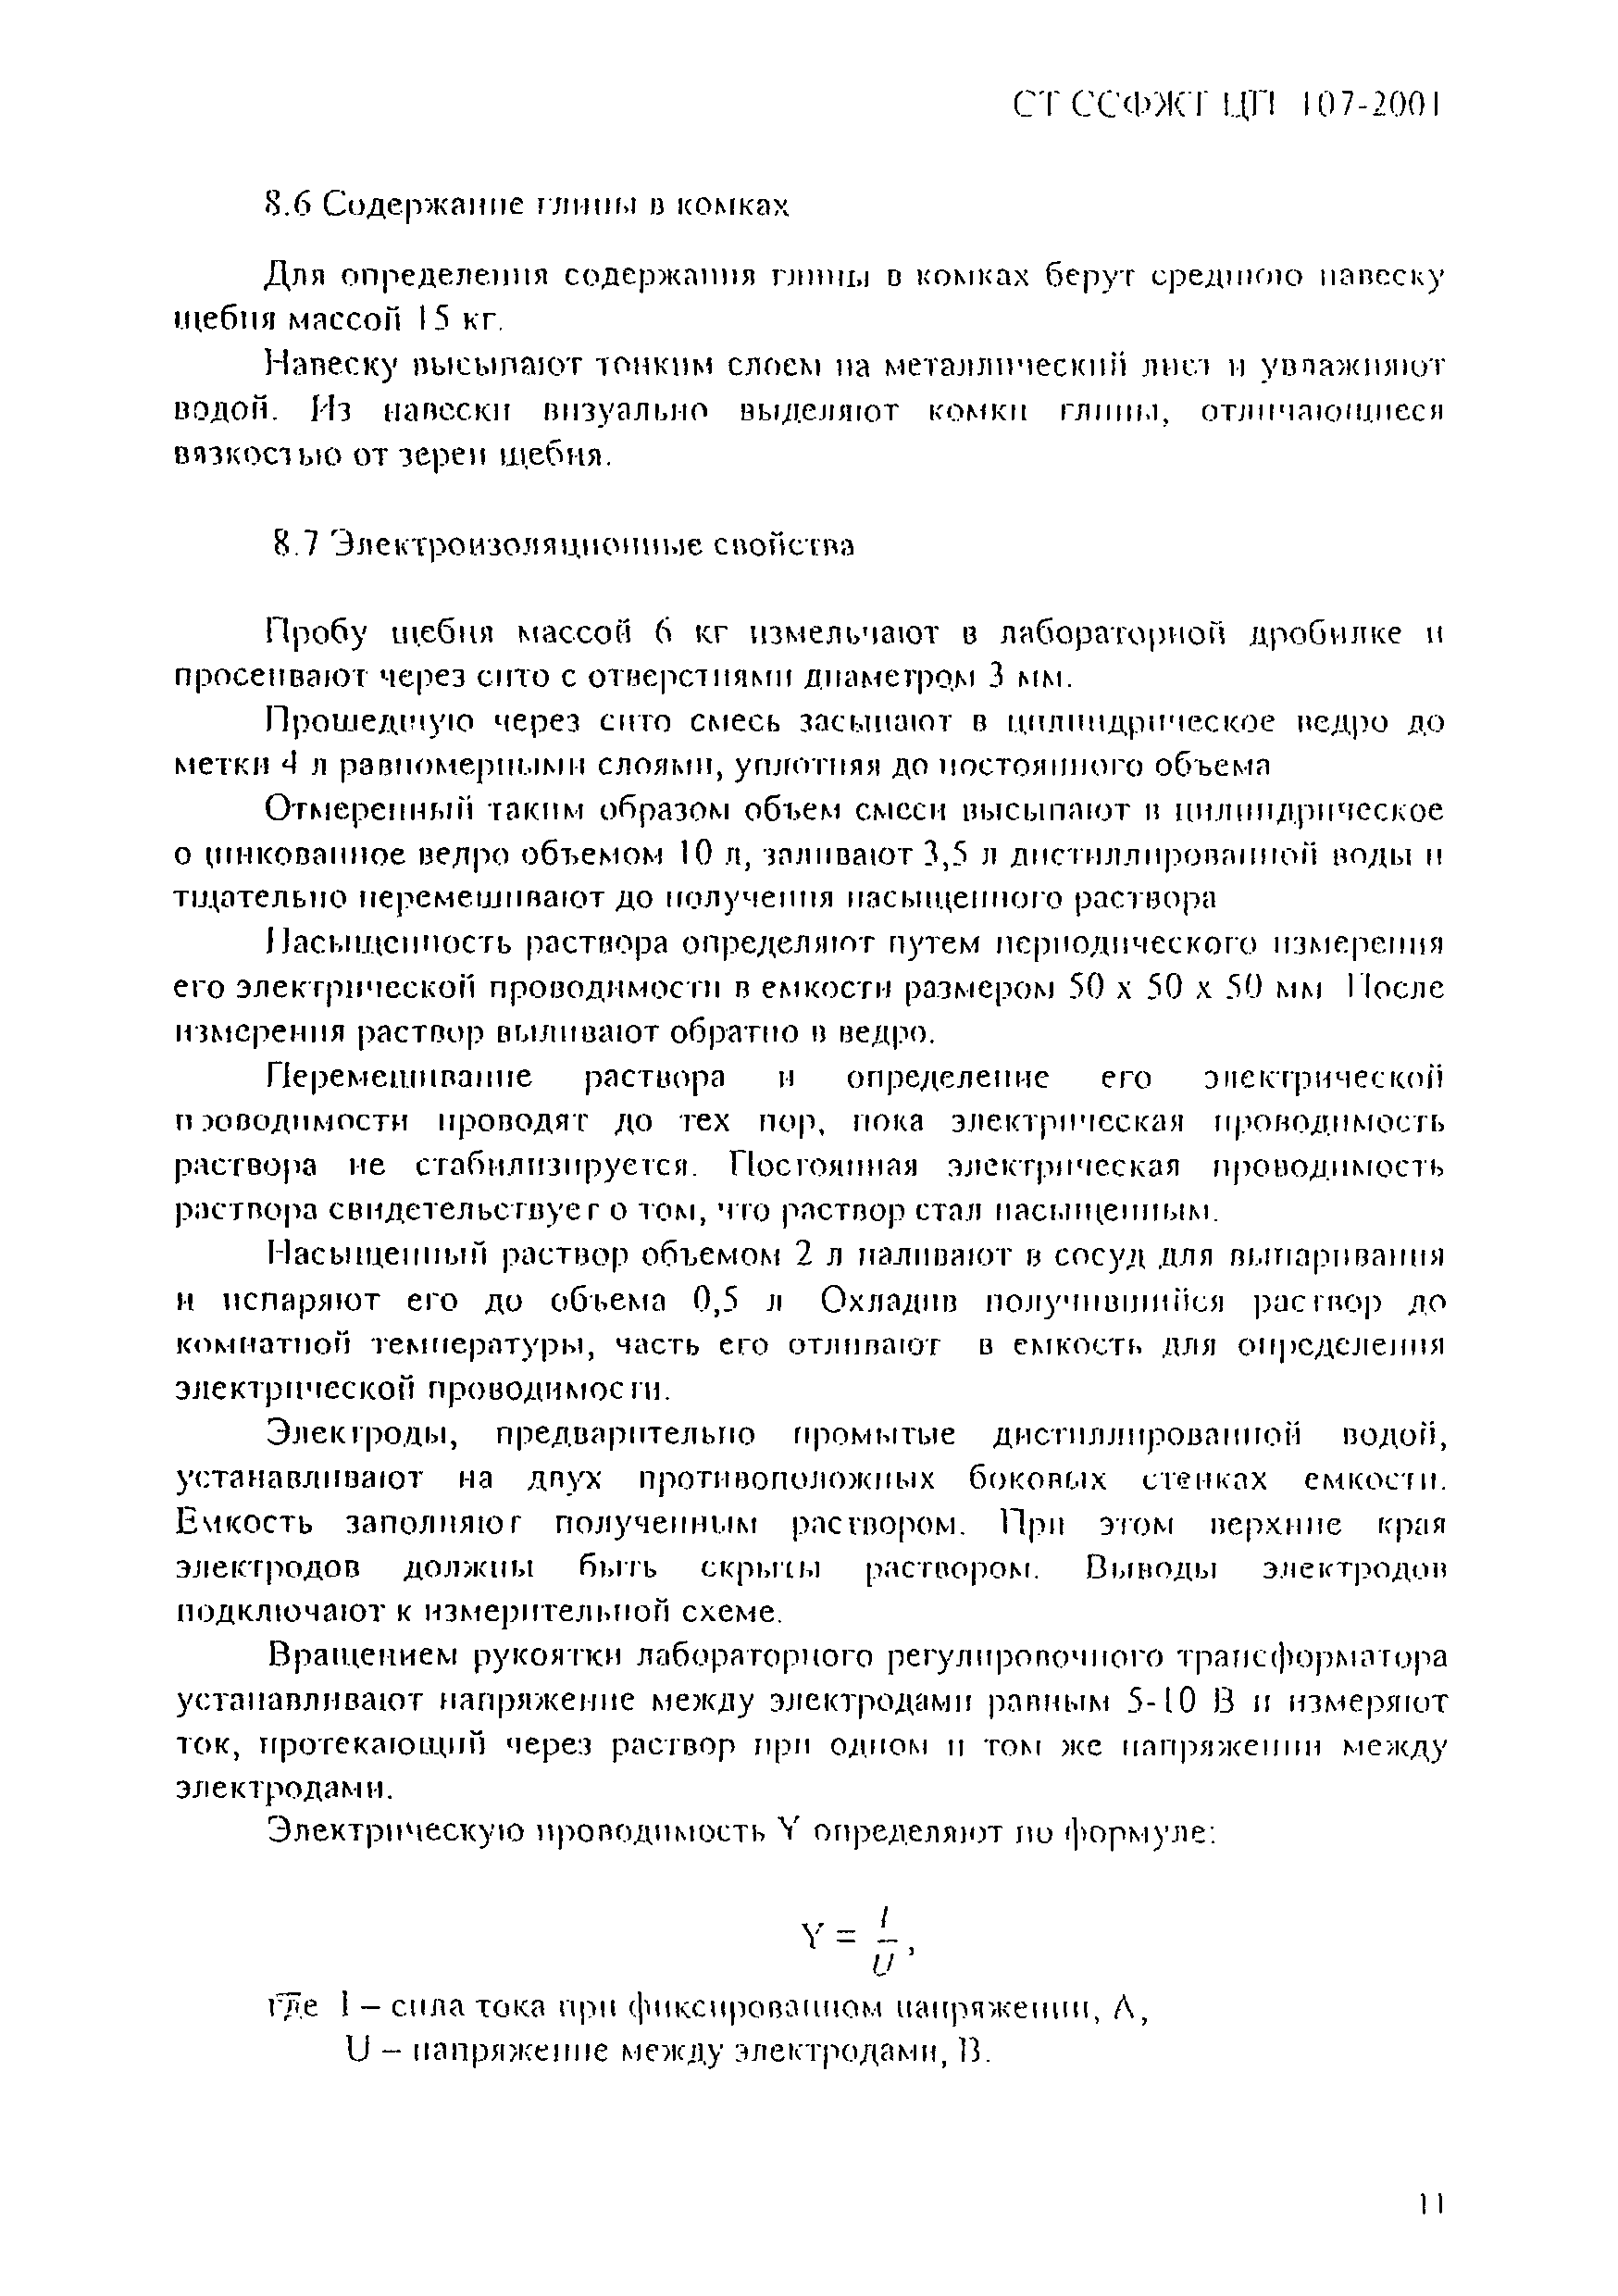 СТ ССФЖТ ЦП 107-2001